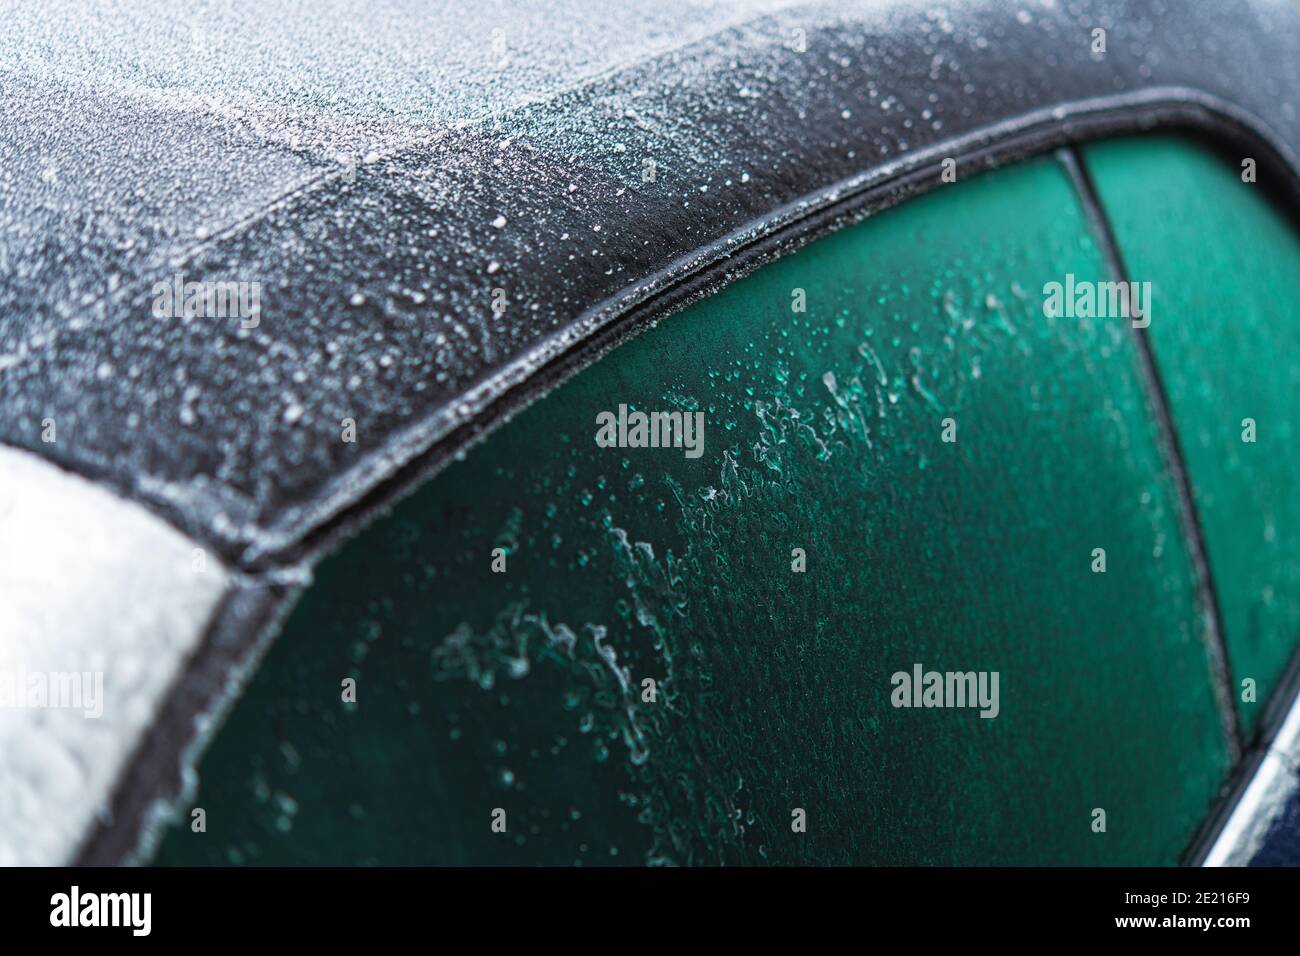 Modernes Cabrio-Fahrzeugdach aus Stoff, das bei extrem niedrigen Temperaturen von Eis und eisigen Regen bedeckt ist. Cabriolet Winter Driving Thema. Stockfoto